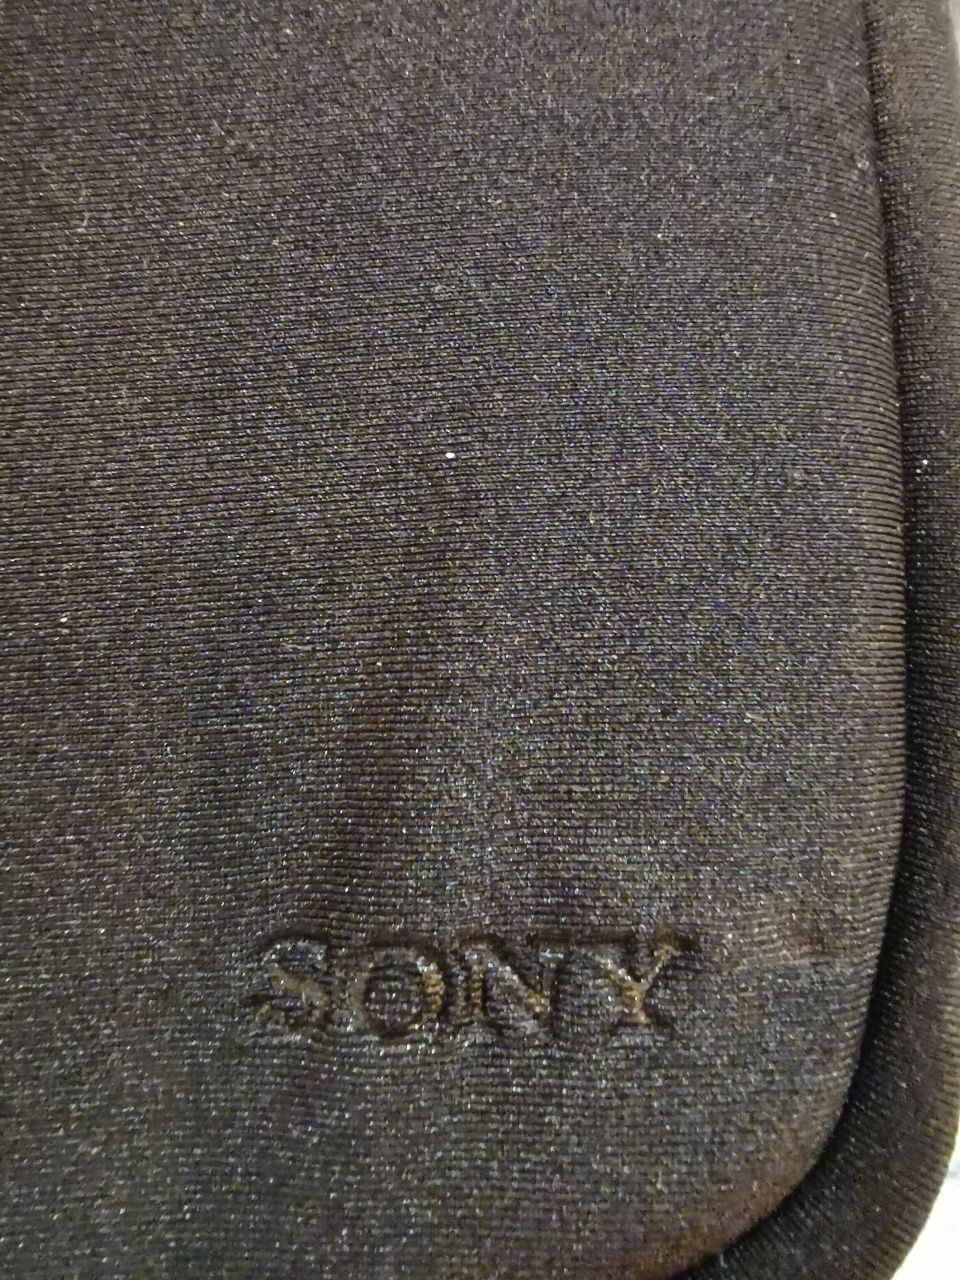 Oryginalny pokrowiec na aparaty Sony z serii nex i nie tylko